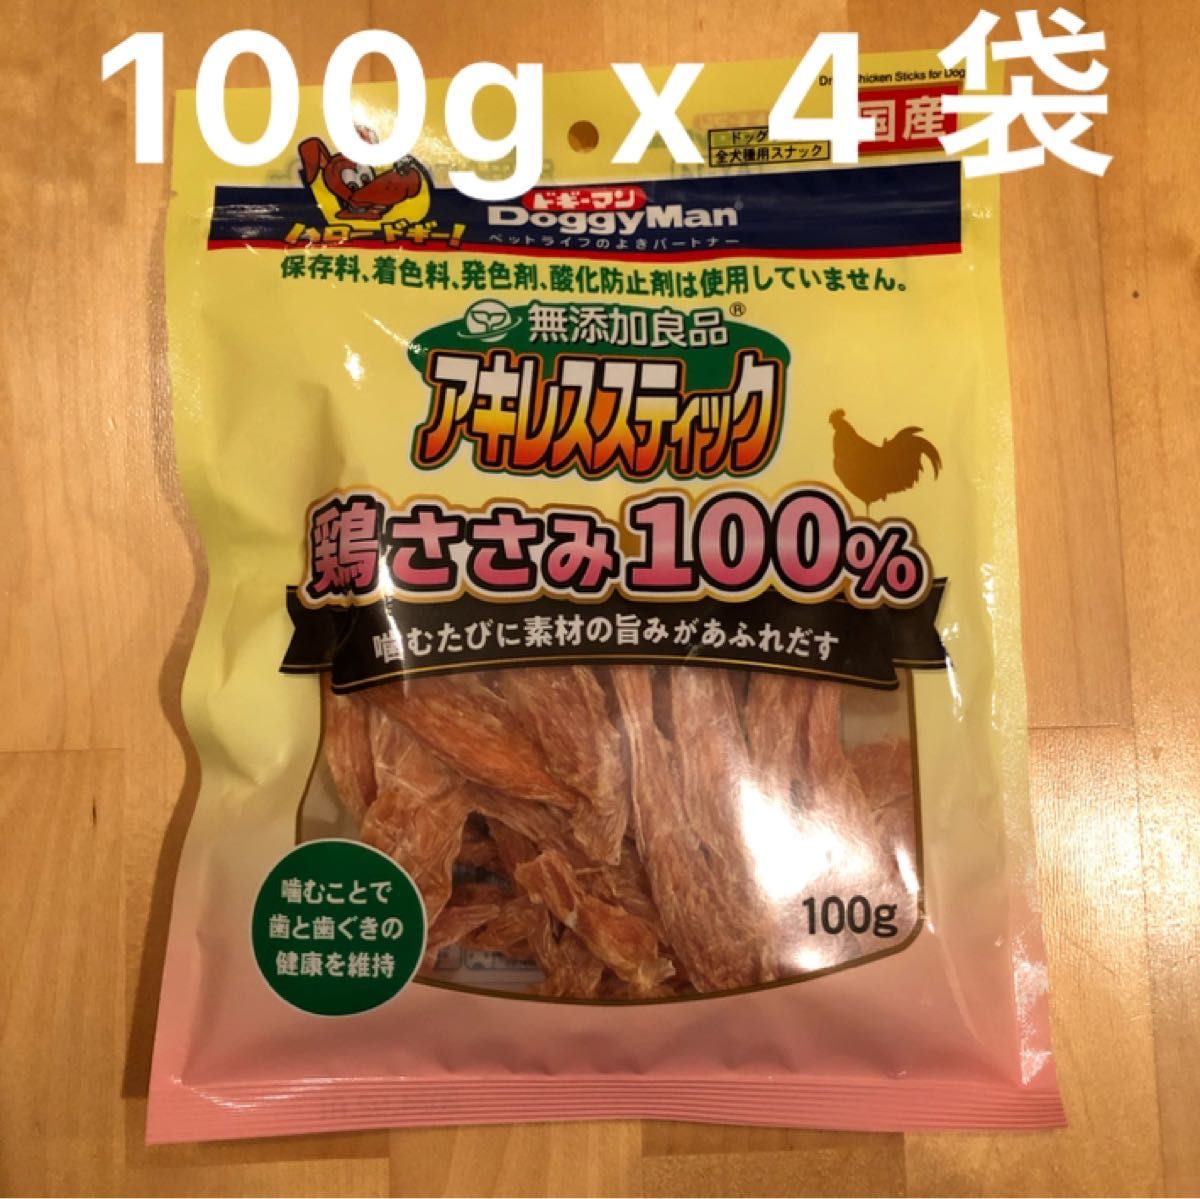 ドギーマン 無添加良品 アキレススティック 鶏ささみ100% 100g ×4袋